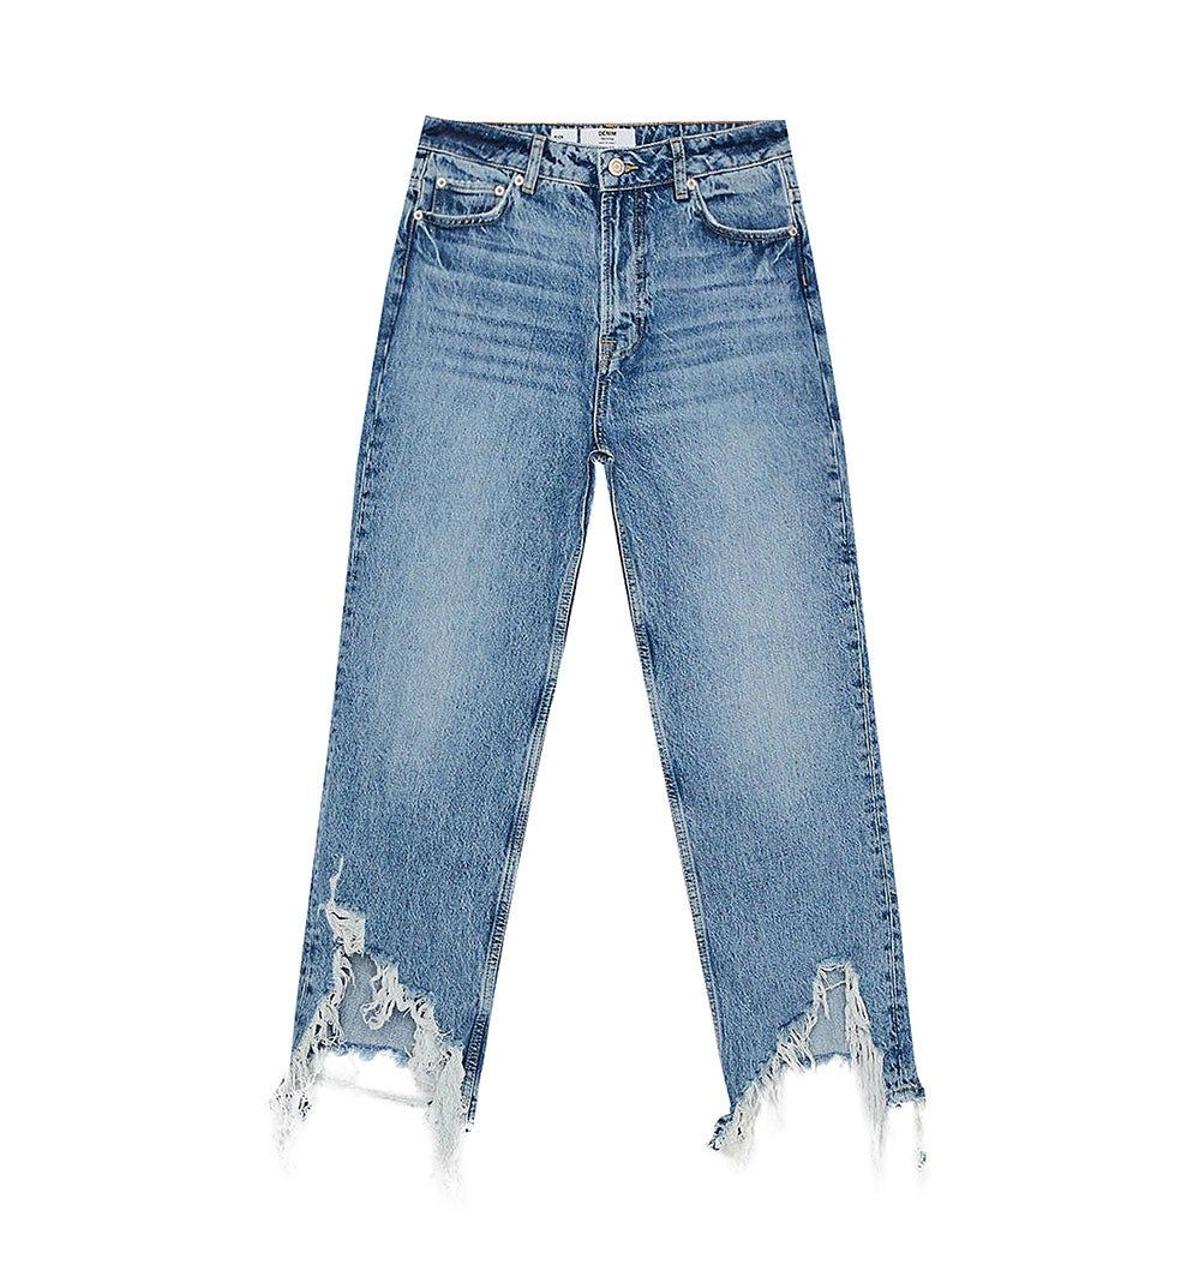 Jeans Kick Flare de Bershka. (Precio: 29, 99 euros)